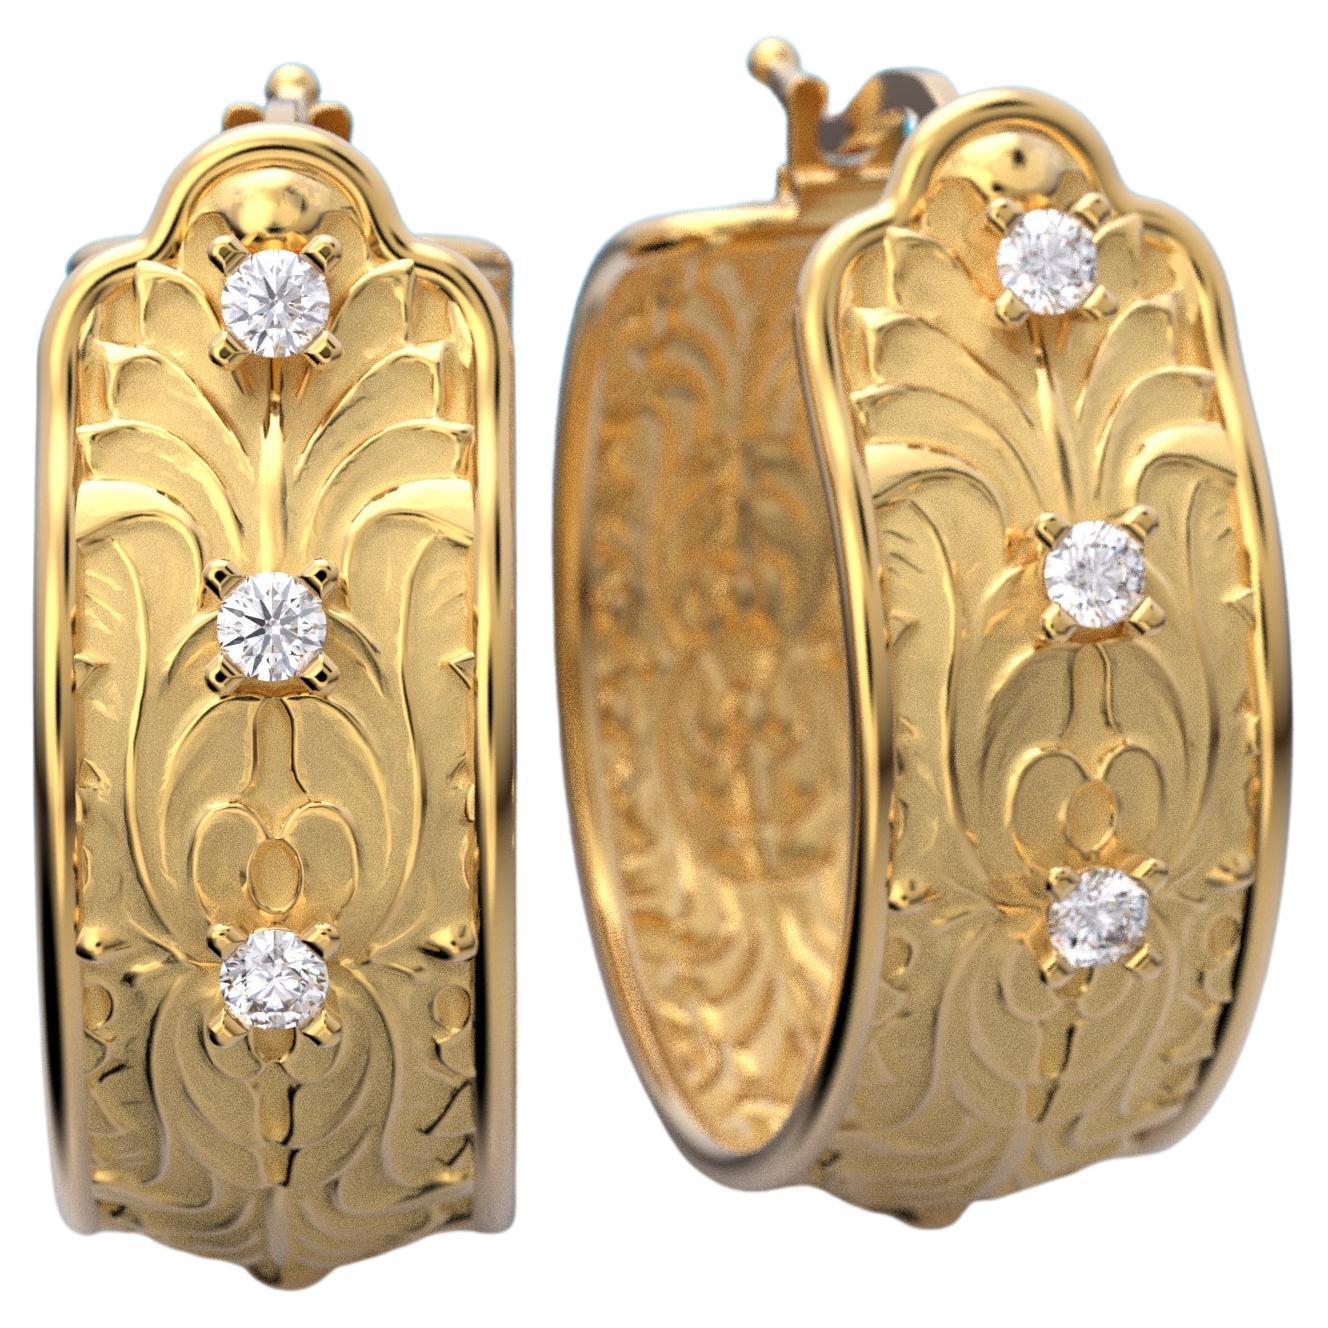 Boucles d'oreilles baroques en or 14k avec diamants, 22mm de diamètre, faites sur commande

Ces exquises boucles d'oreilles baroques italiennes en diamant sont fabriquées en or 14k et ont un diamètre de 22 mm. Ils sont conçus et fabriqués en Italie